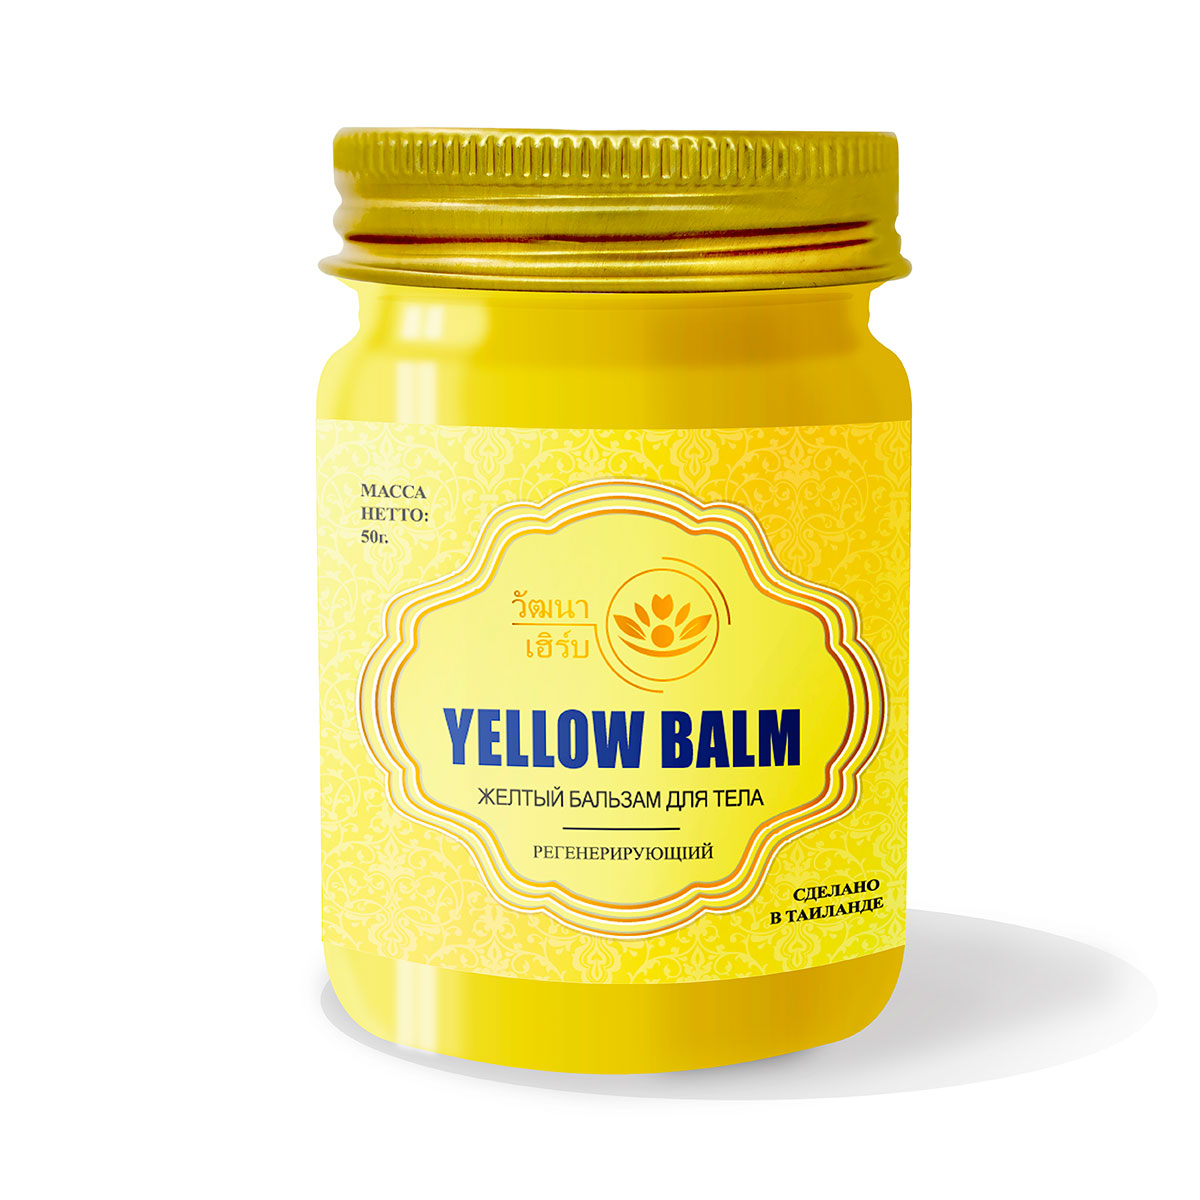 Тайский натуральный Желтый бальзам для тела регенерирующий Wattana Herb Yellow Balm 50гр.